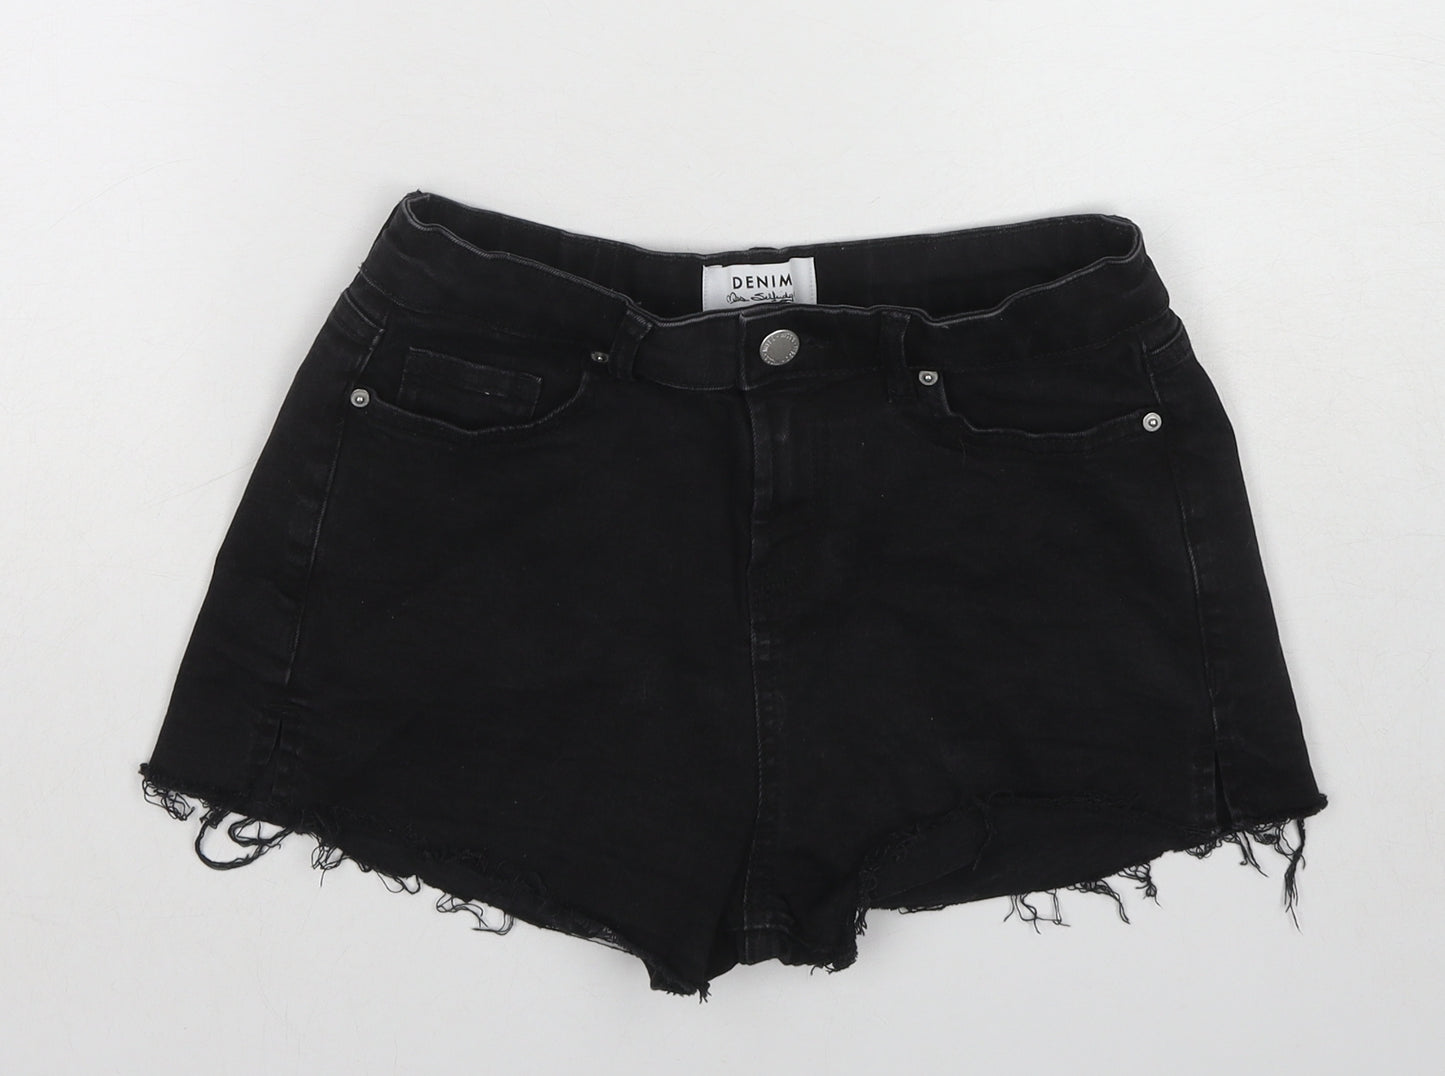 Miss Selfridge Womens Black Cotton Boyfriend Shorts Size 8 L3 in Regular Pull On - Raw Hem